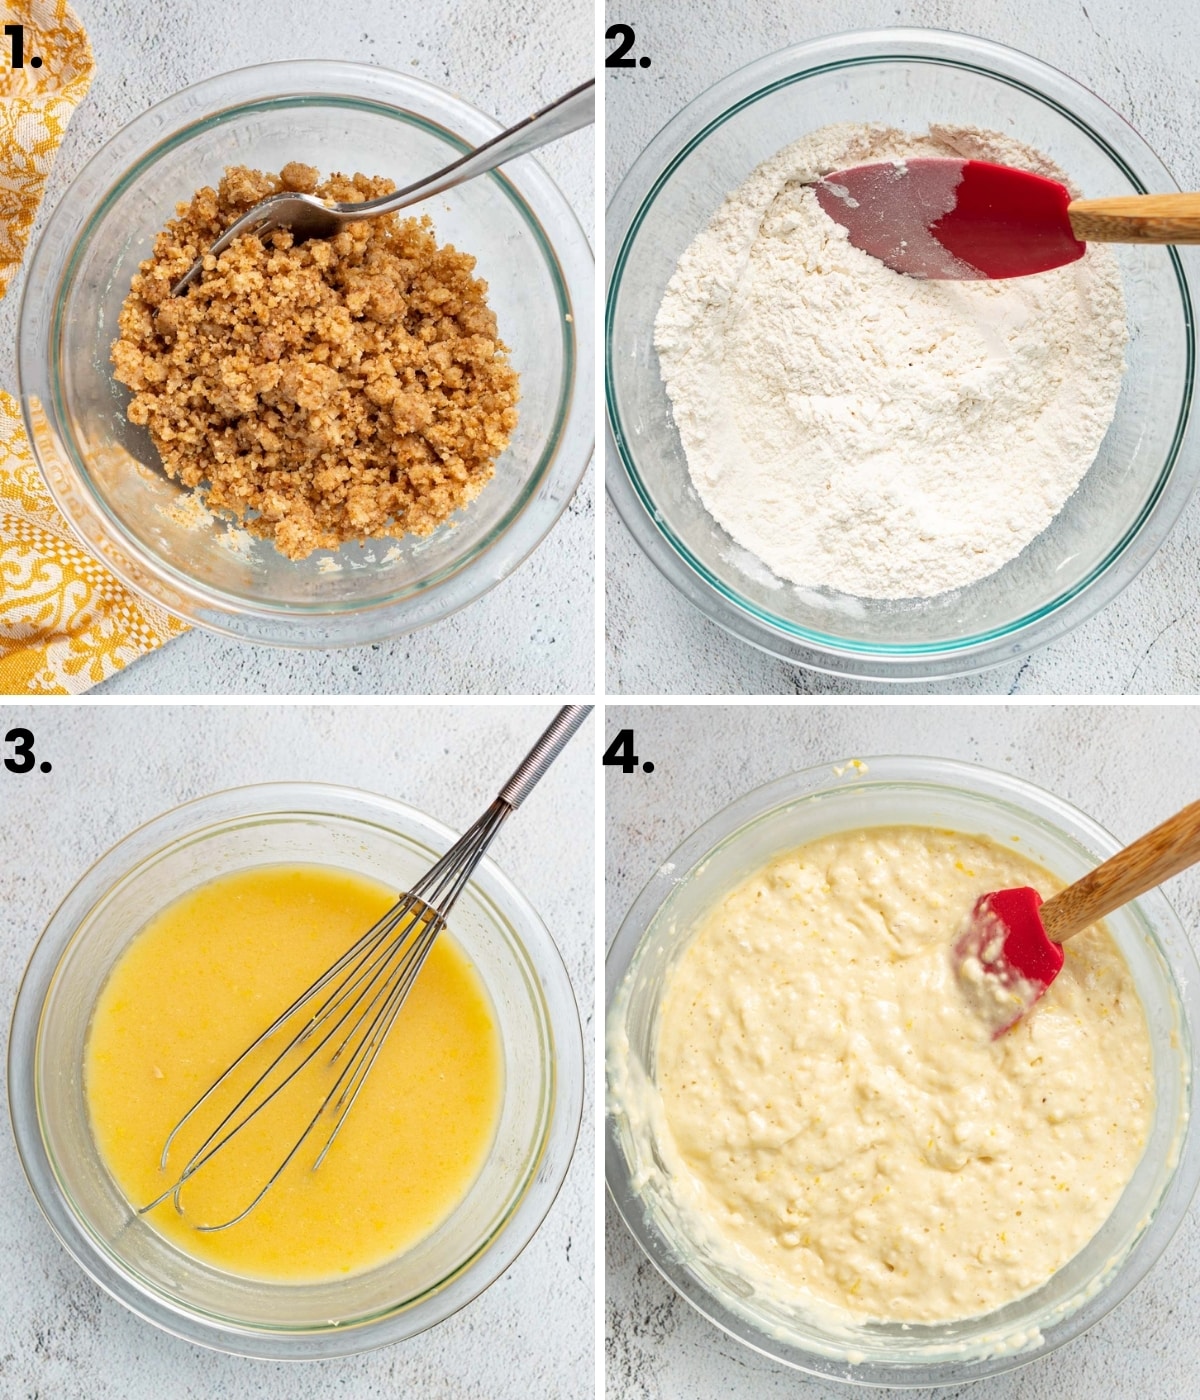 photos showing how to make vegan lemon muffins